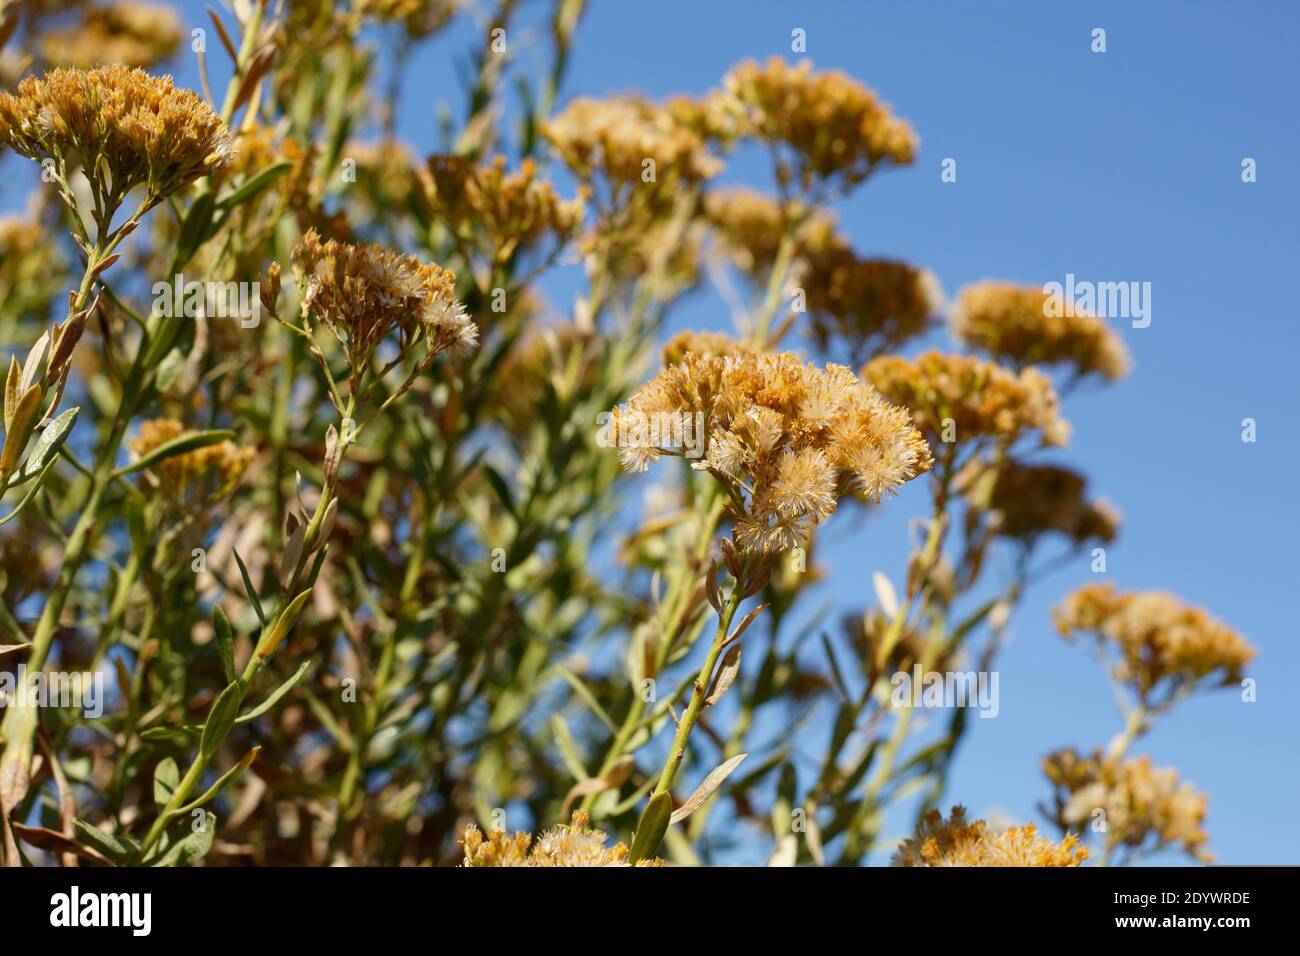 Acene aceno aceno aceno aceno aceno aceno aceno acero, Ericameria Parishii, Asteraceae, arbusto nativo, montagne di San Jacinto, catene peninsulari, autunno. Foto Stock